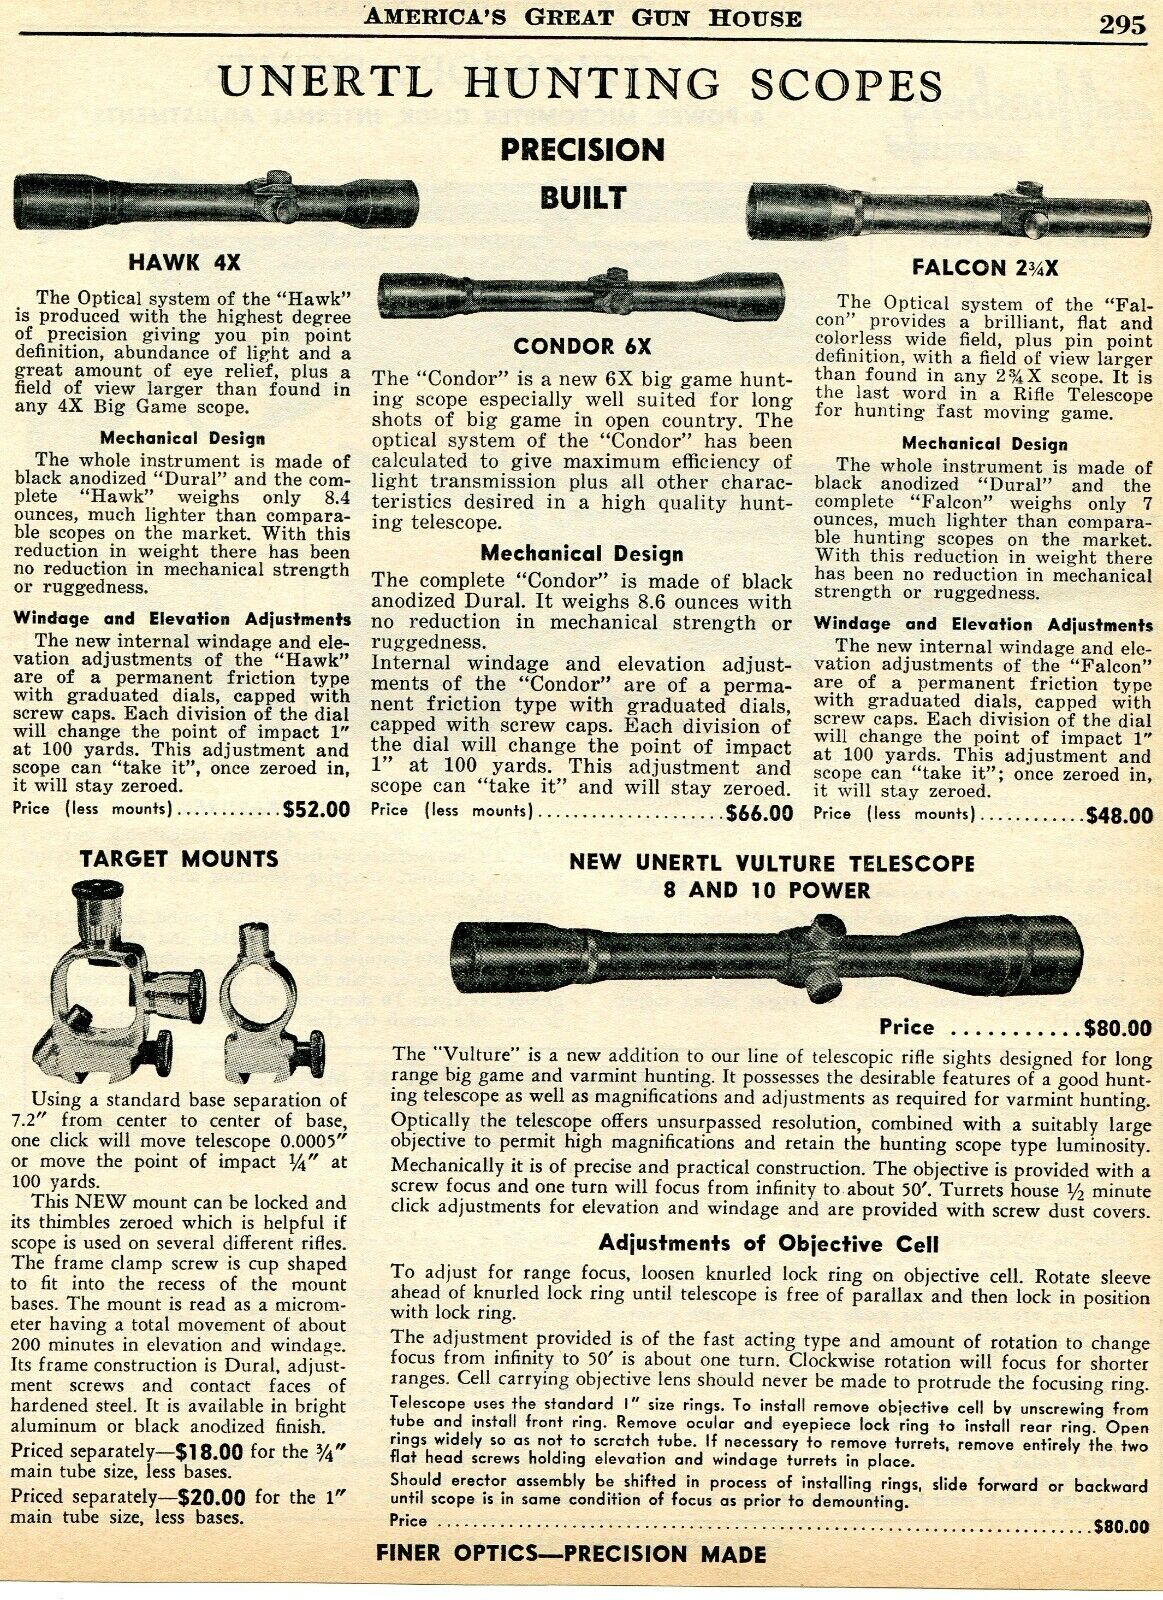 1960 Print Ad Unertl Hunting Rifle Scope Hawk, Condor, Falcon, Vulture  Telescope